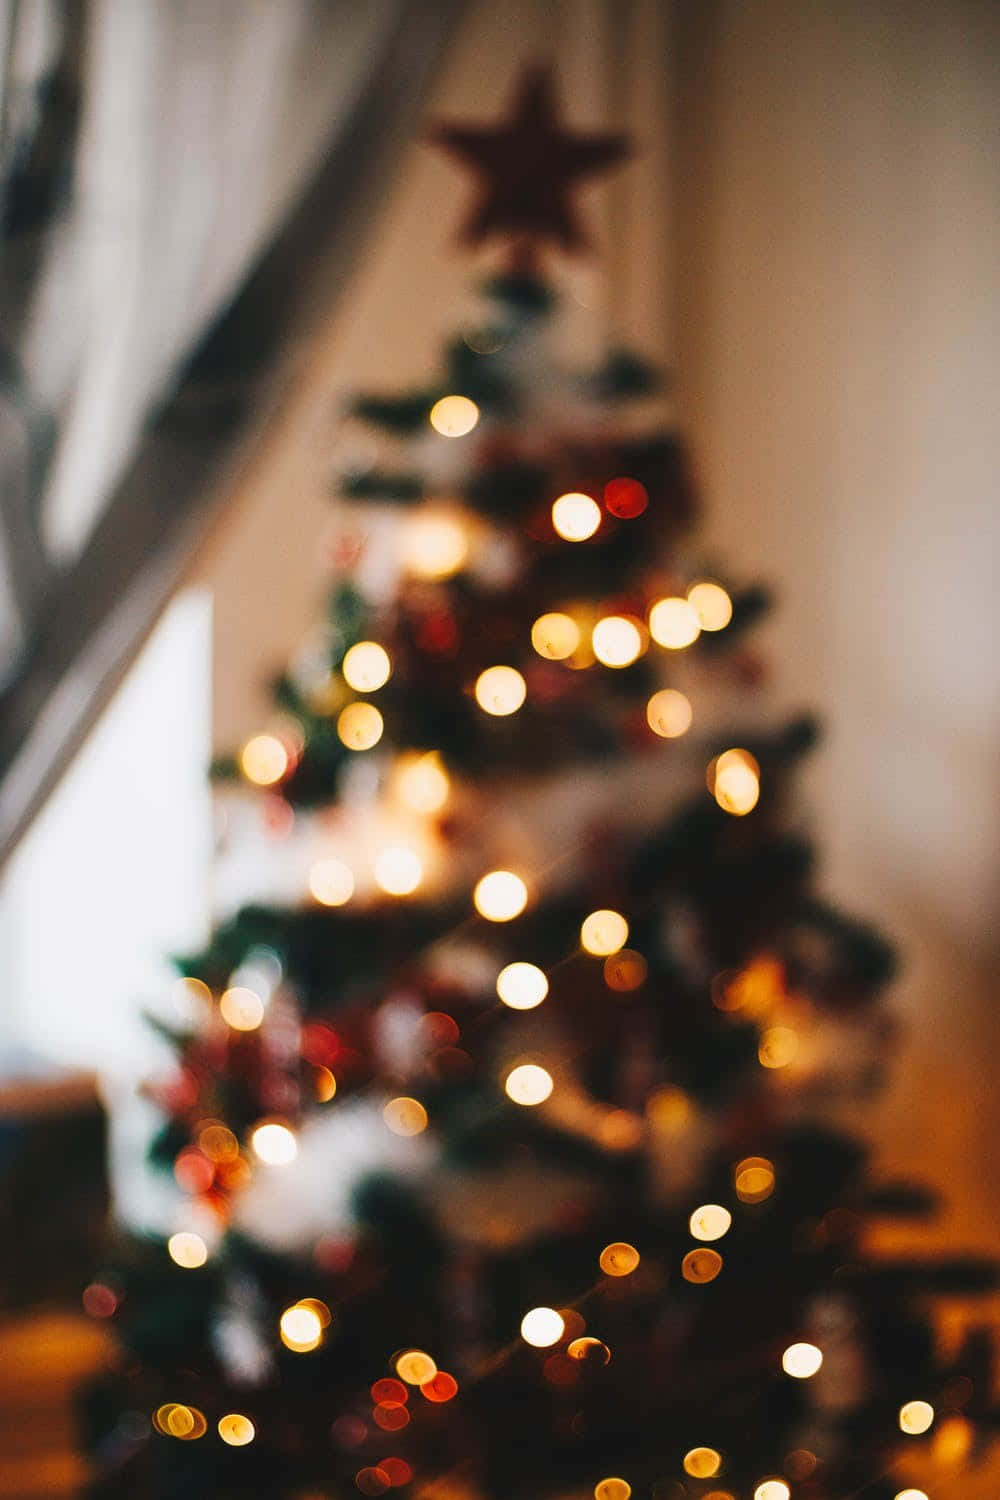 Diesesfestliche Weihnachtshintergrundbild Umrahmt Perfekt Dein Handy Für Die Feiertage.